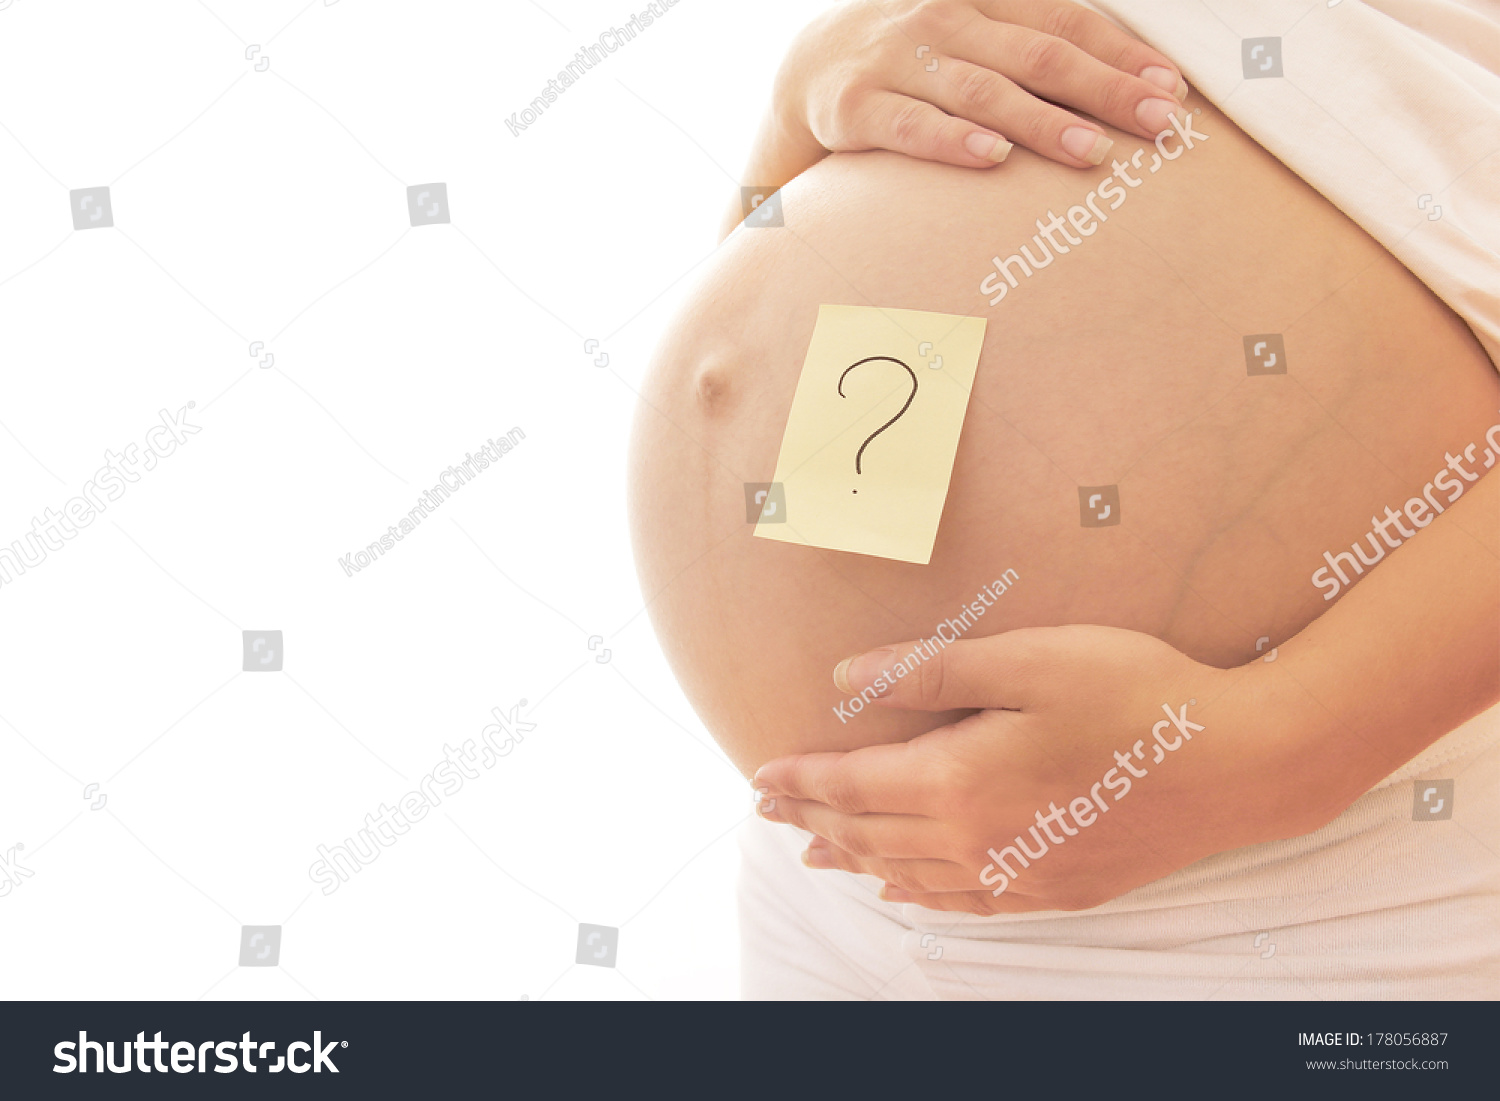 выделения из грудей на 34 недели беременности фото 104